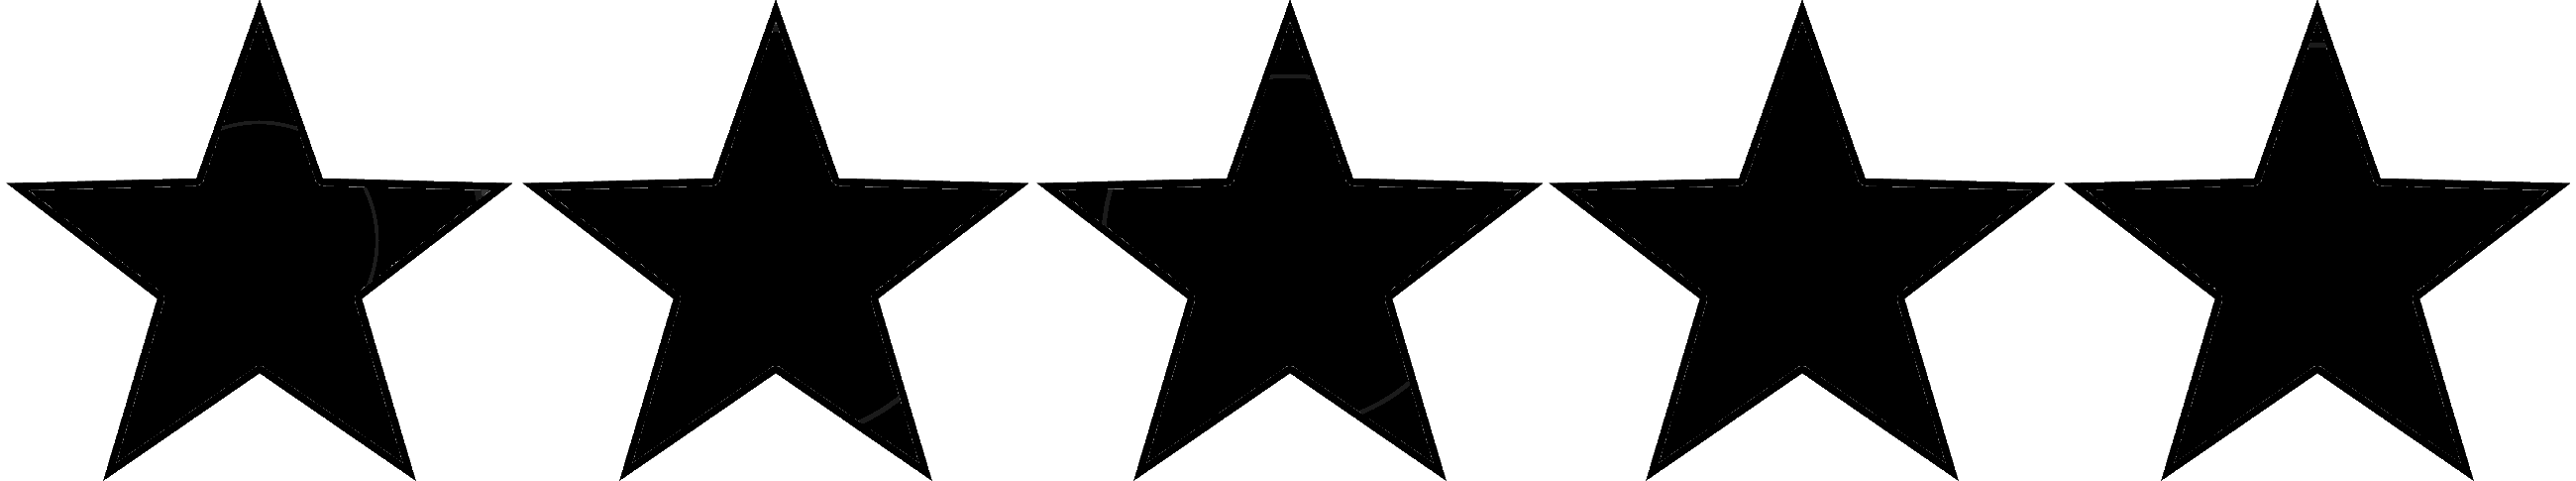 Black 5 Star Rating Transparent PNG